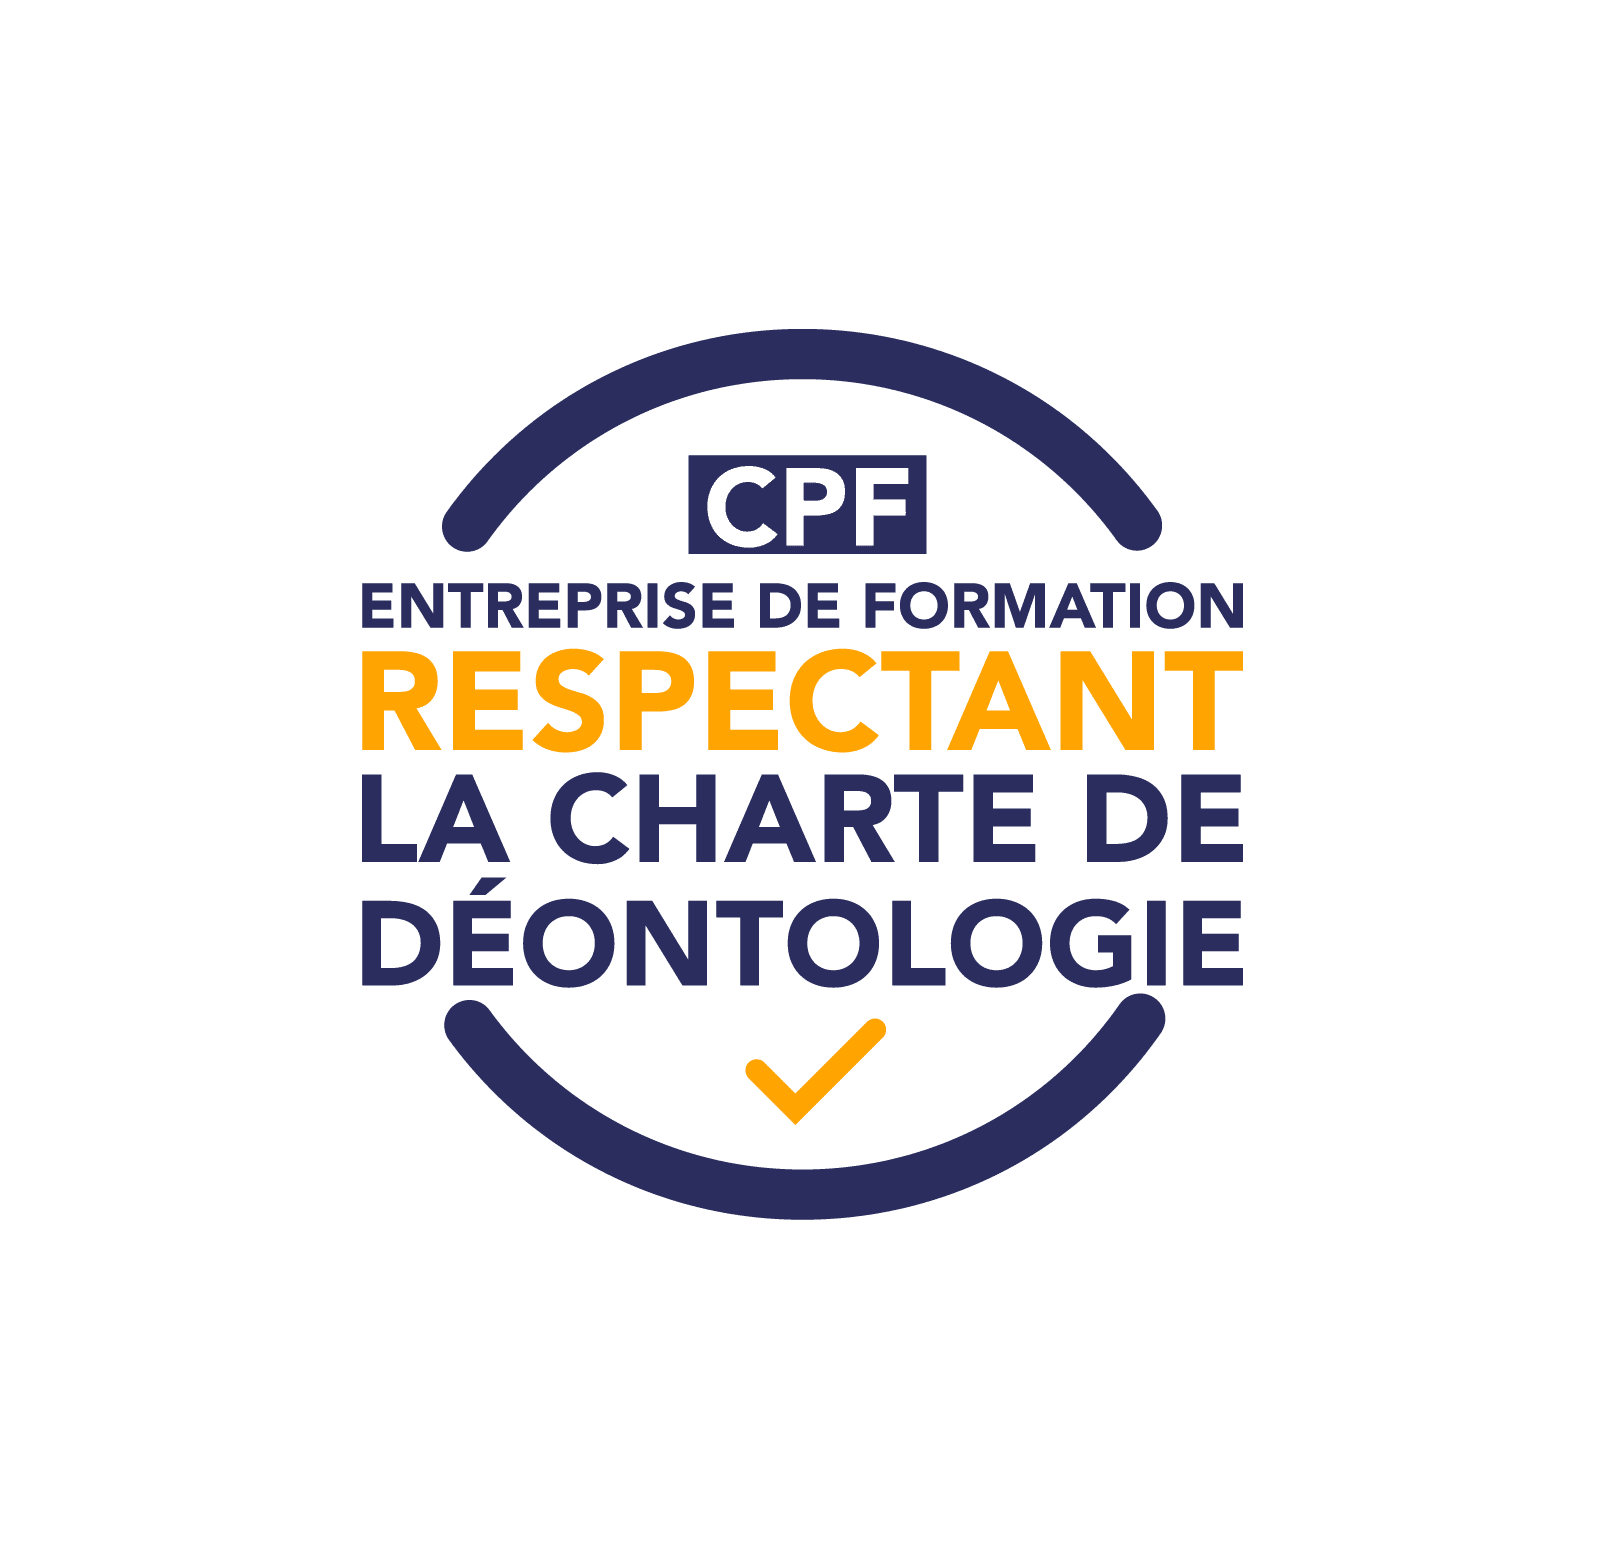 CPF charte